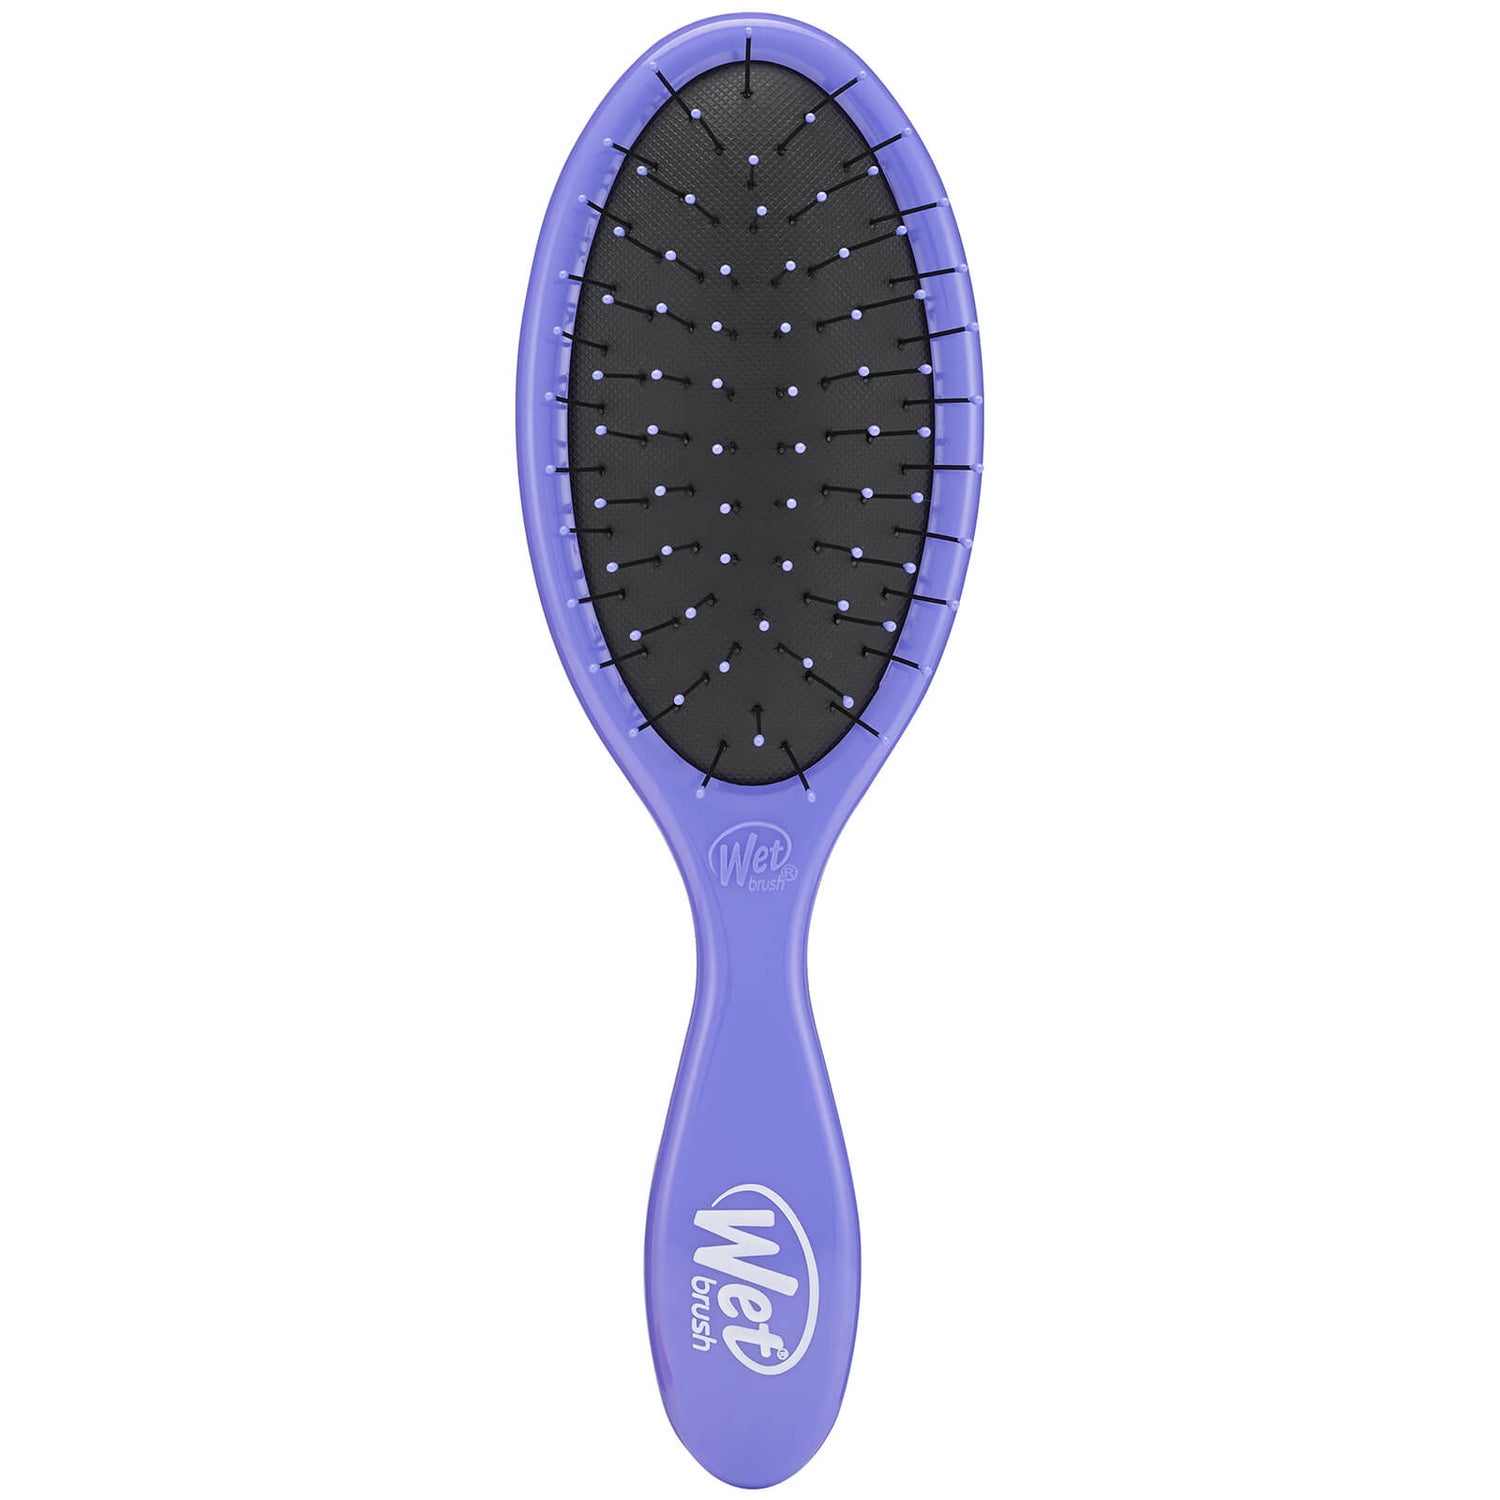 WetBrush Custom Care Thin Hair Detangler Brush